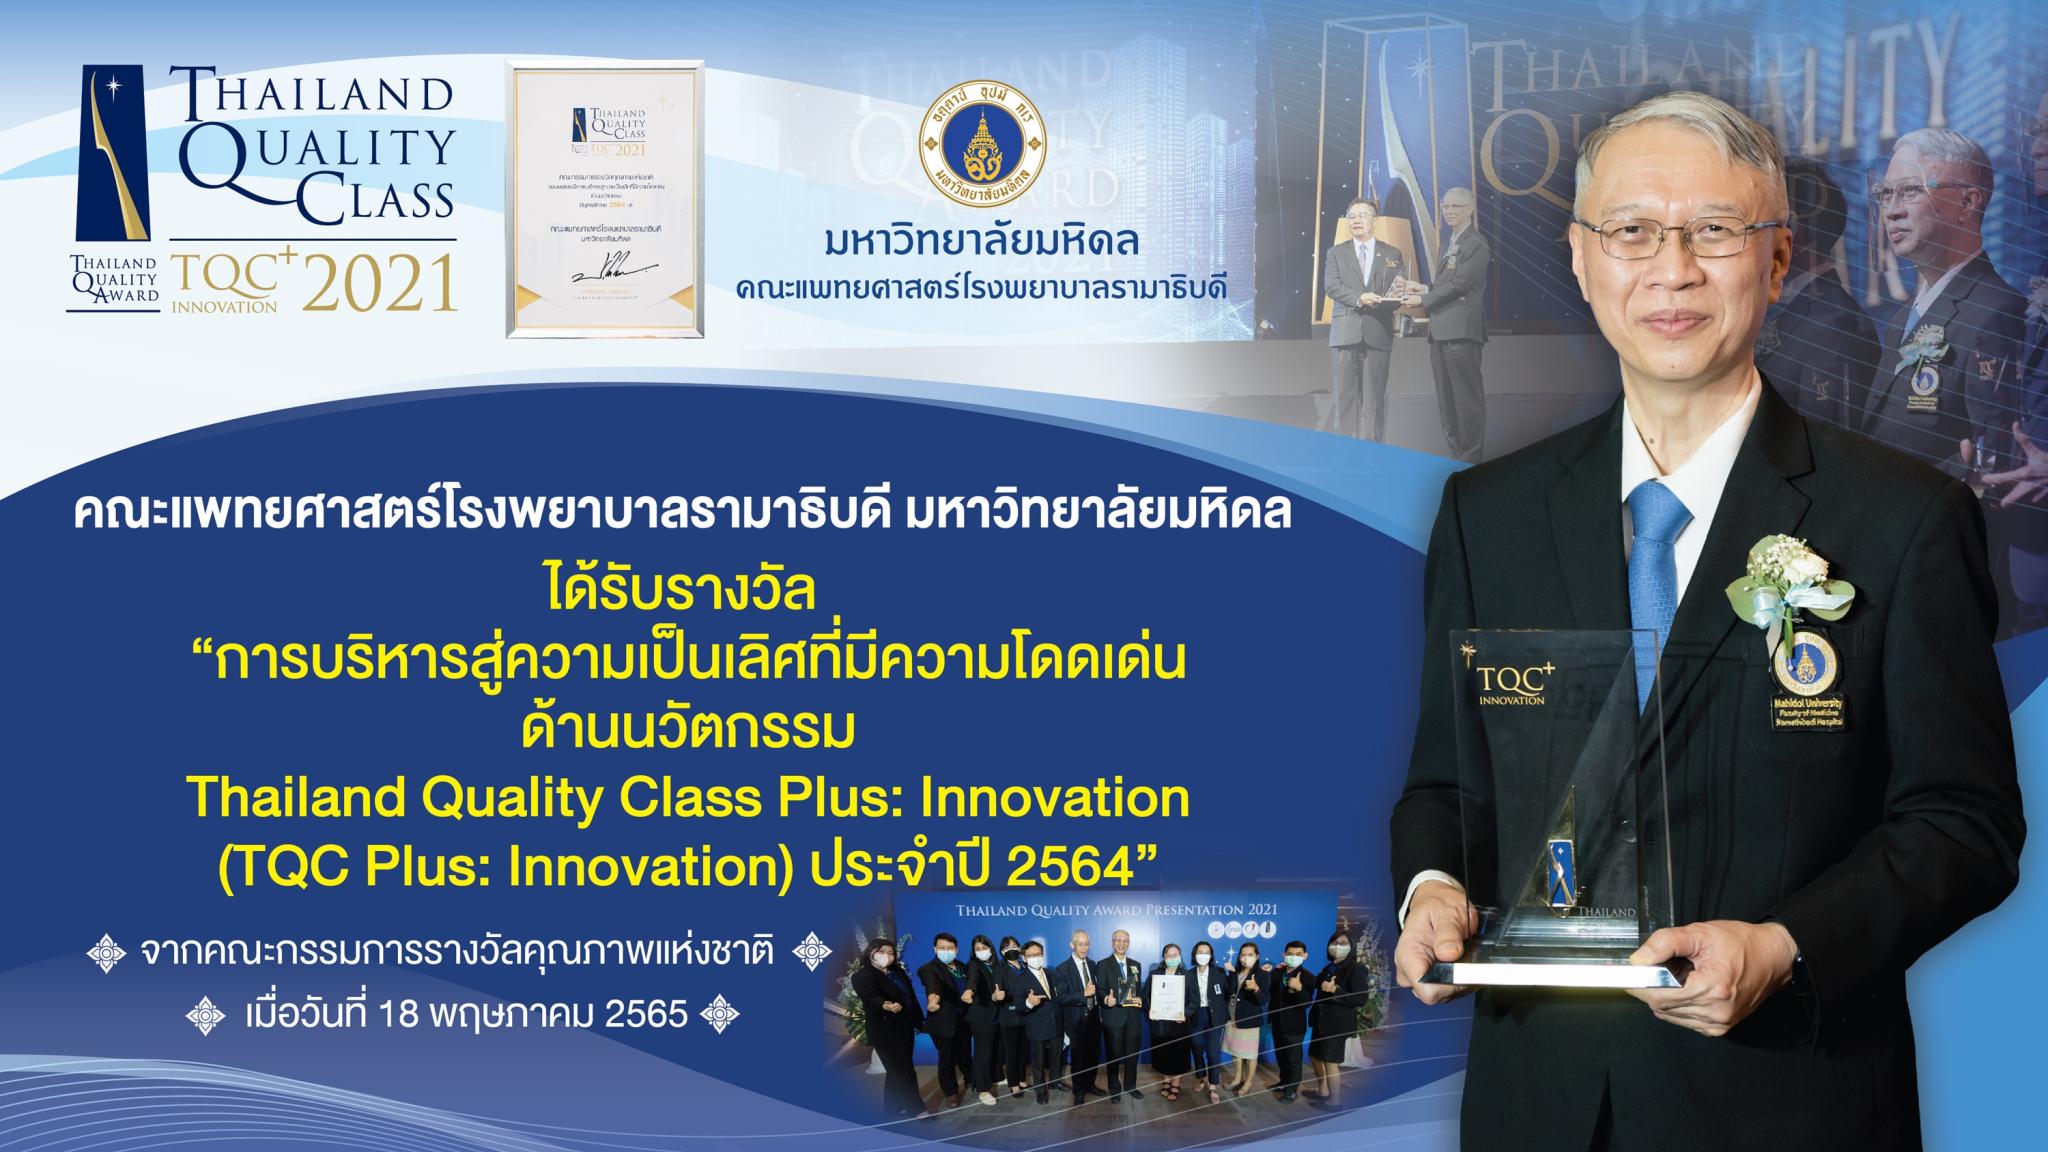 คณะแพทยศาสตร์โรงพยาบาลรามาธิบดี มหาวิทยาลัยมหิดล ได้รับรางวัล "การบริหารสู่ความเป็นเลิศที่มีความโดดเด่น ด้านนวัตกรรม Thailand Quality Class Plus: Innovation (TQC Plus: Innovation) ประจำปี 2564"